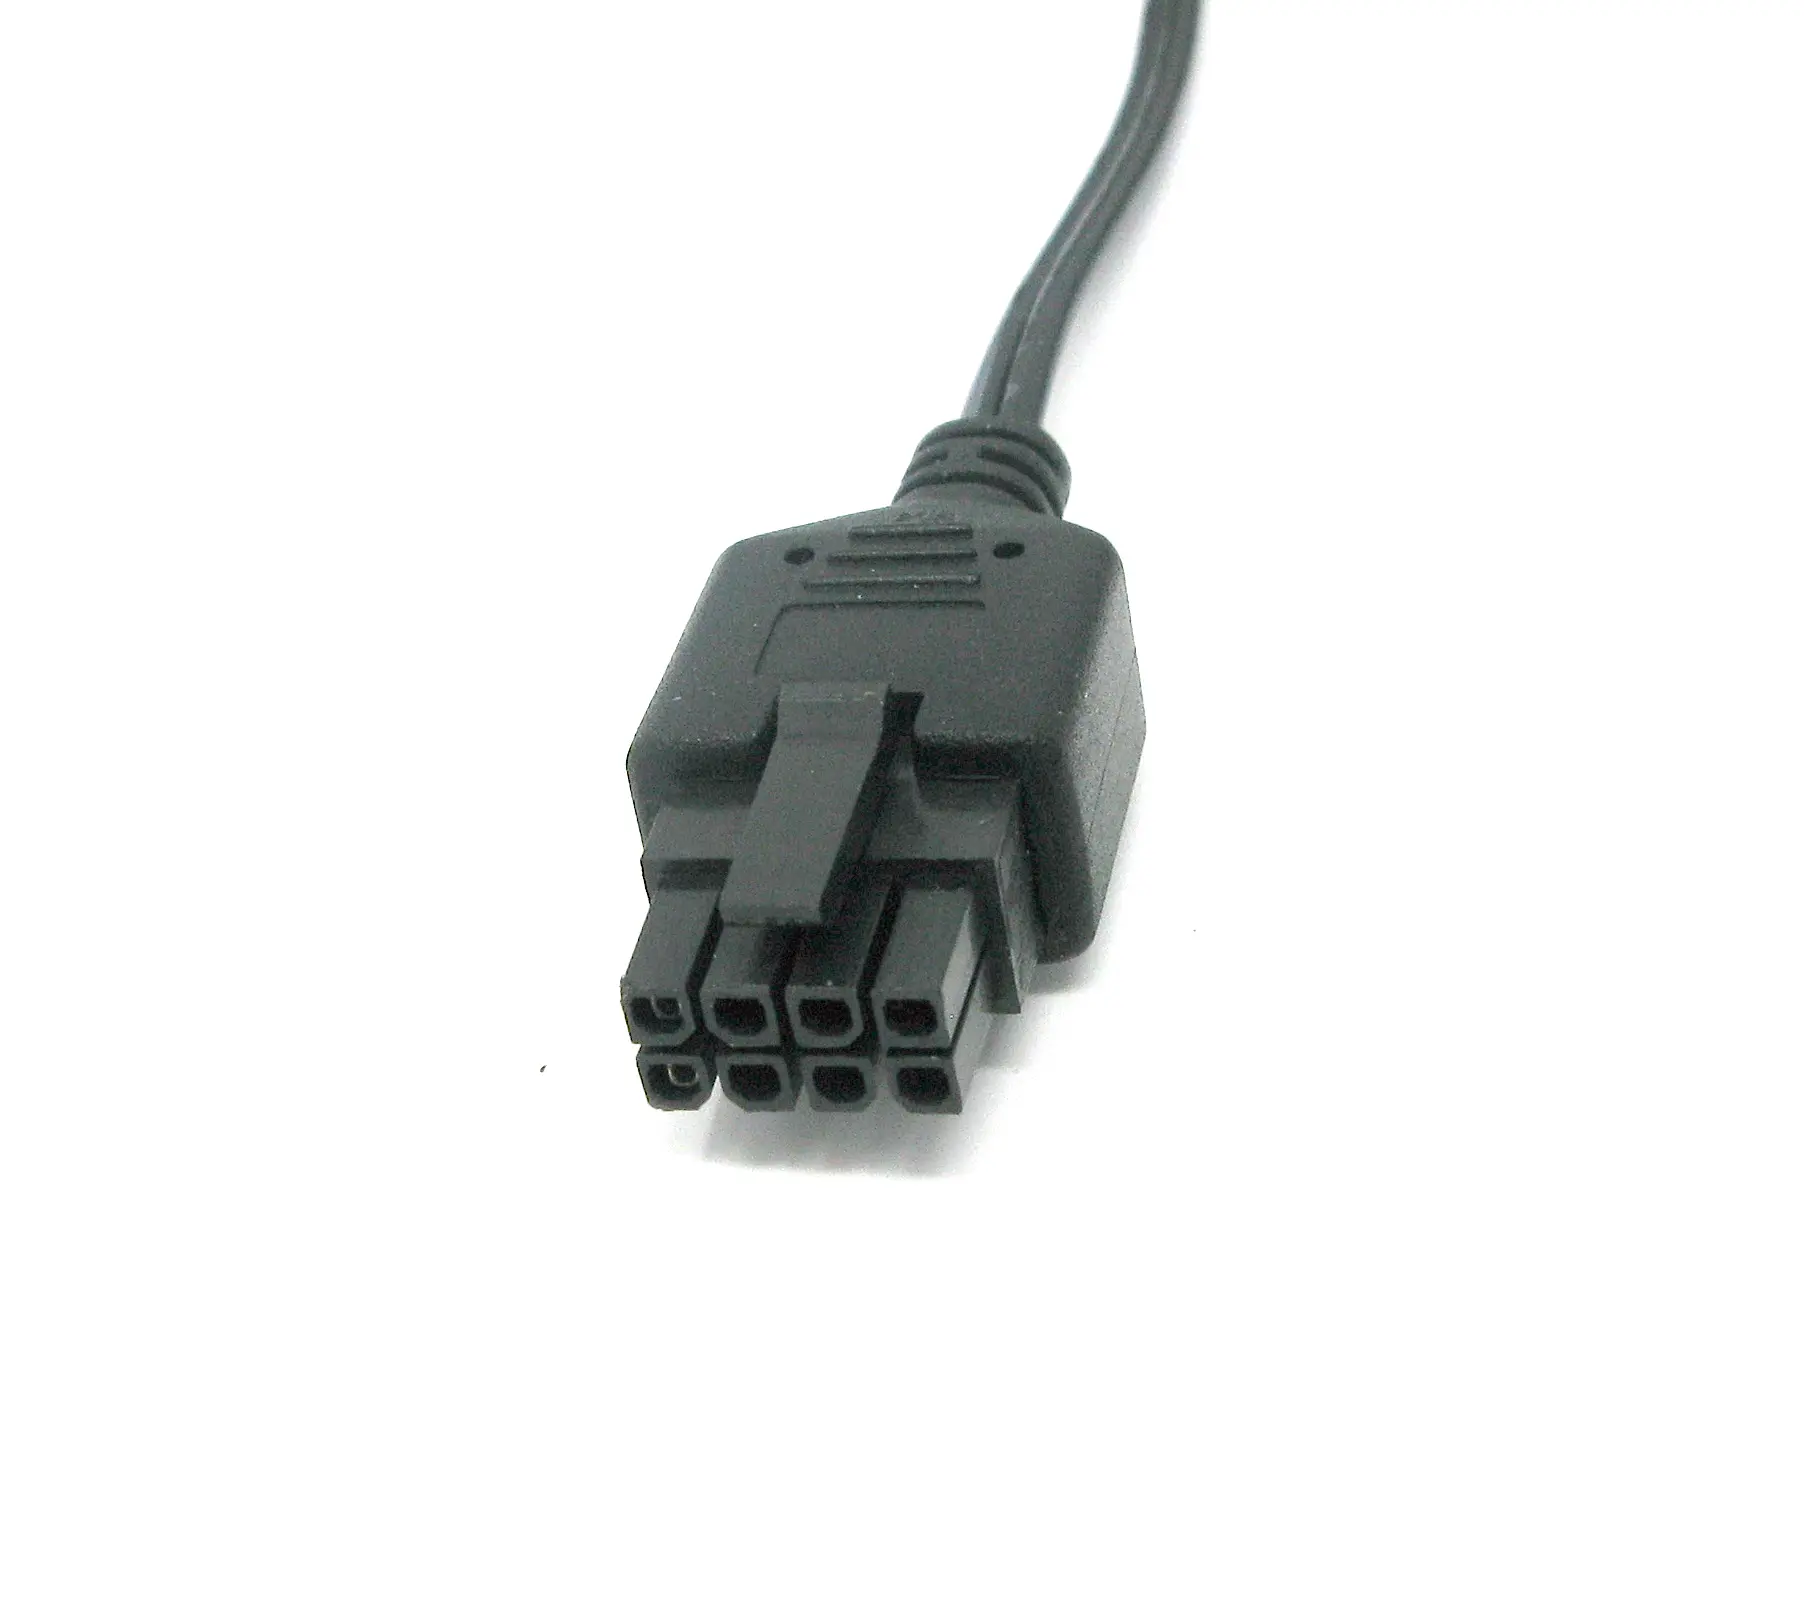 GlobTek offre des versions surmoulées de Molex 43025-0800 Micro-Fit 3.0 (8) boîtier de connecteur de circuit Micro-Fit 3.0, double rangée, 8 circuits, UL 94V-0, faible teneur en halogène, noir pour divers types de câbles et d'applications, MOL8 / C0677
